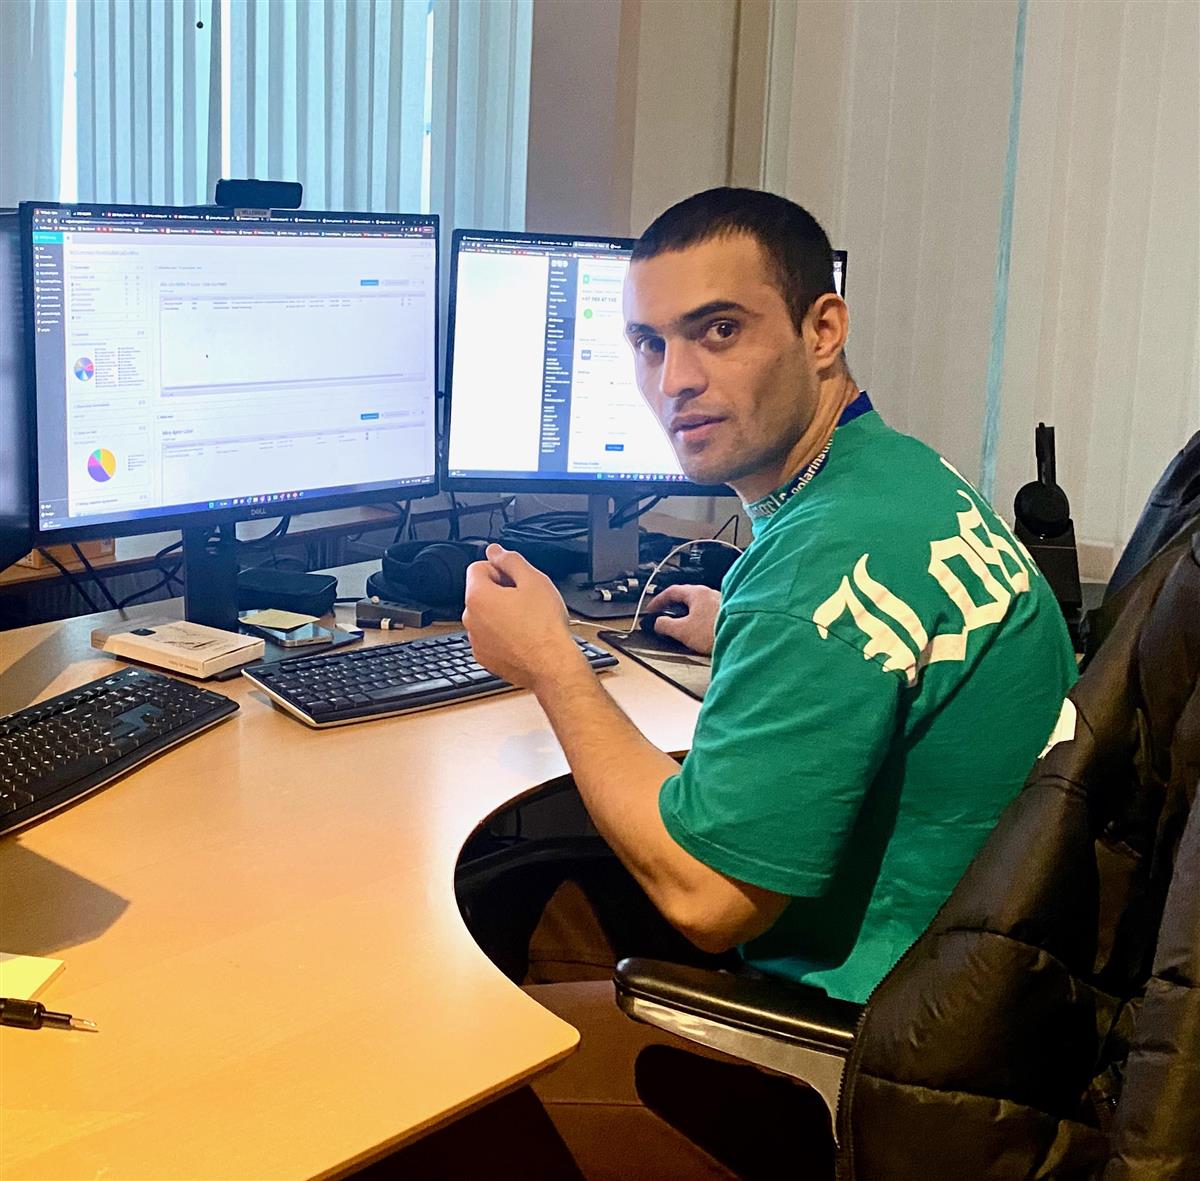 En grønnkledd mann sitter foran to dataskjermer som står på et bord. Fotografi. - Klikk for stort bilde